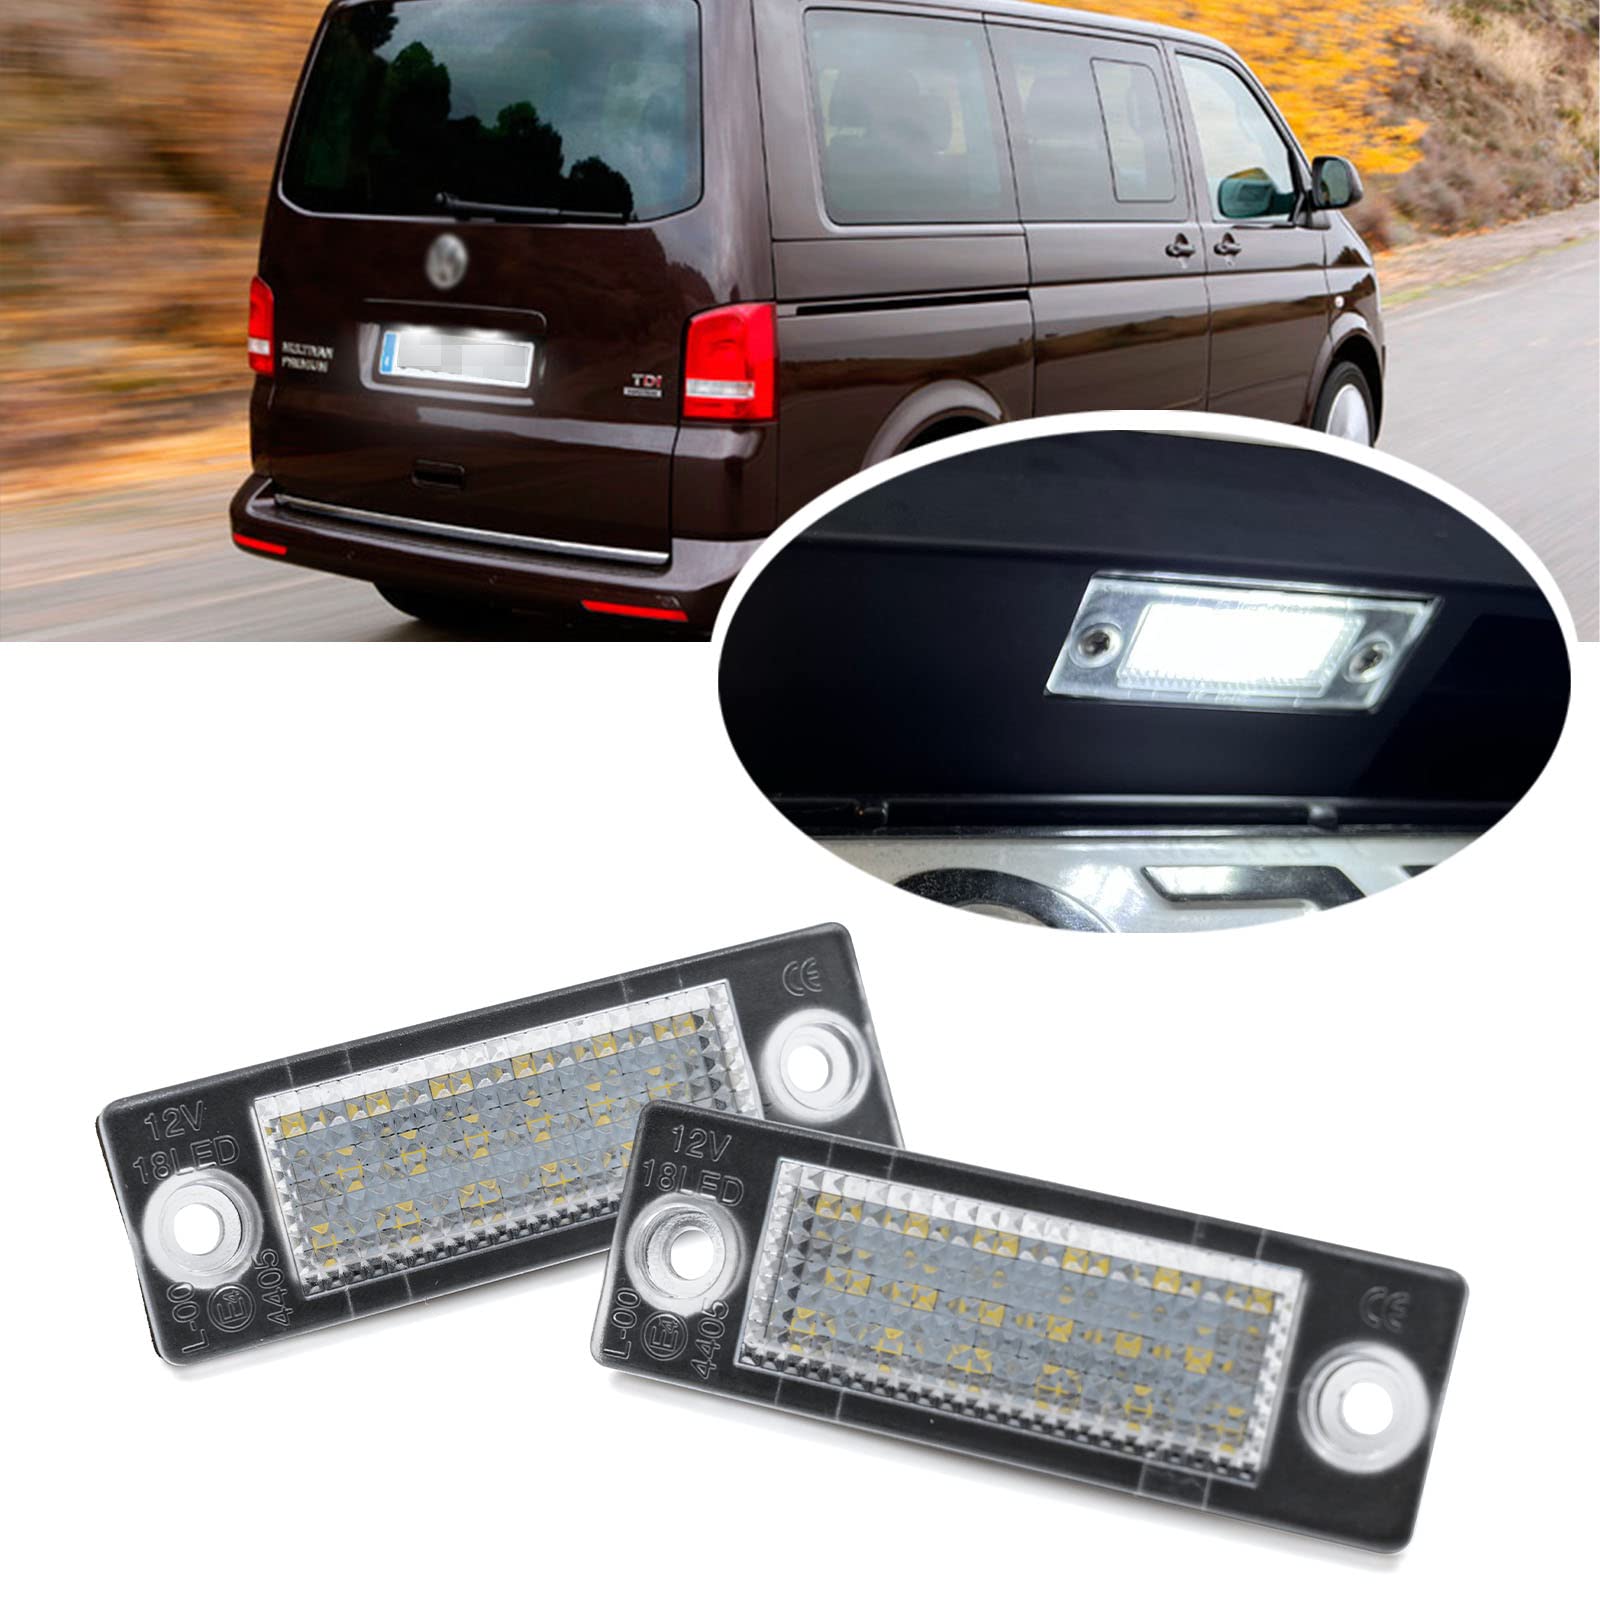 2 x LED Kennzeichenbeleuchtung für VW Caddy MK3 Transporter T5 T6 T6.1 Golf MK5 P/Assat B5 B6 J/etta Touran Skoda Superb 18-SMD 6000K Weiß Canbus LED Tag Lampen von njssjd